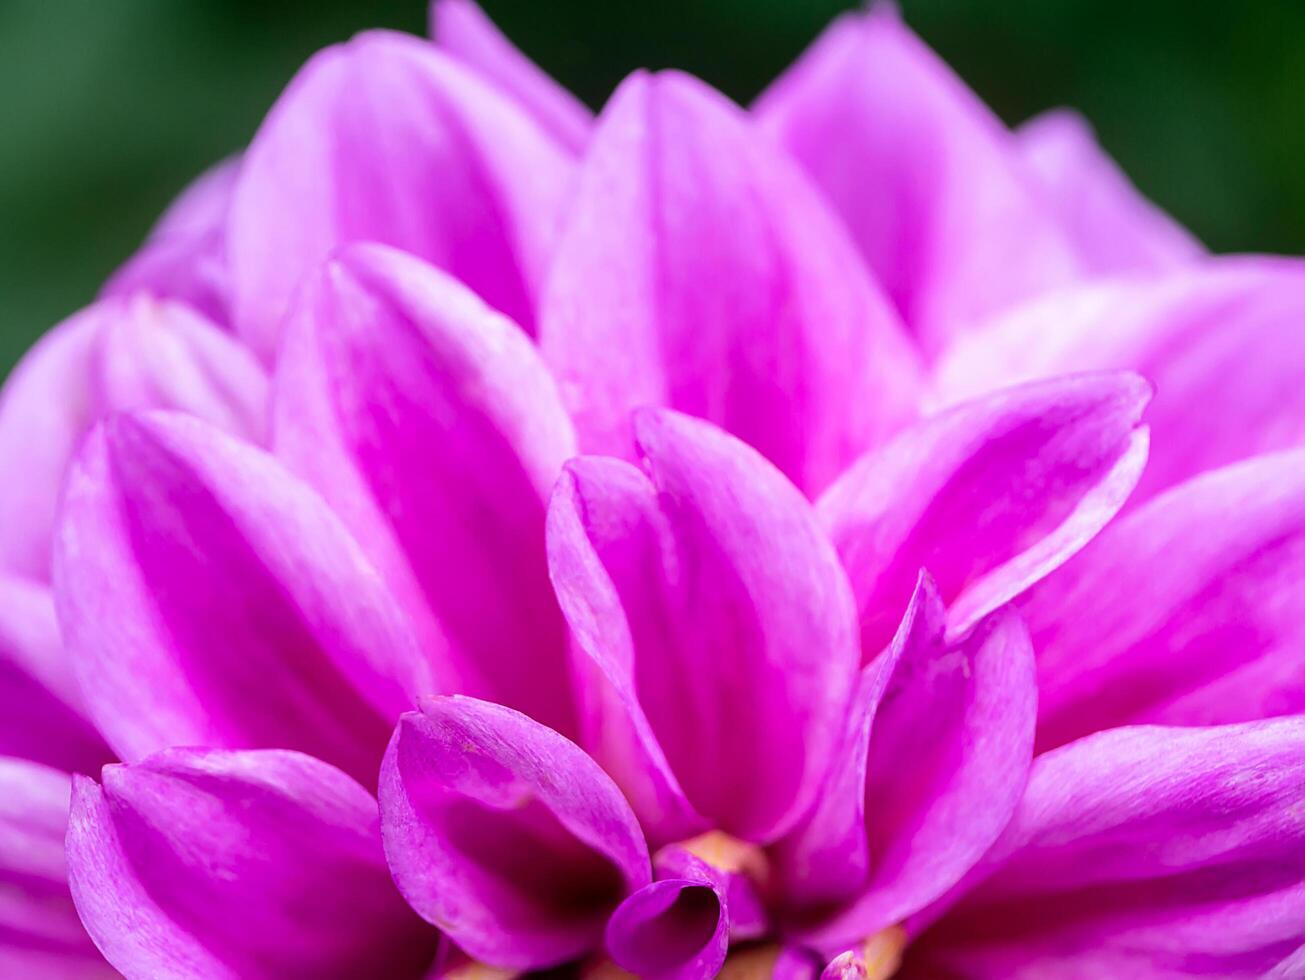 Close up of dahlia flower. photo